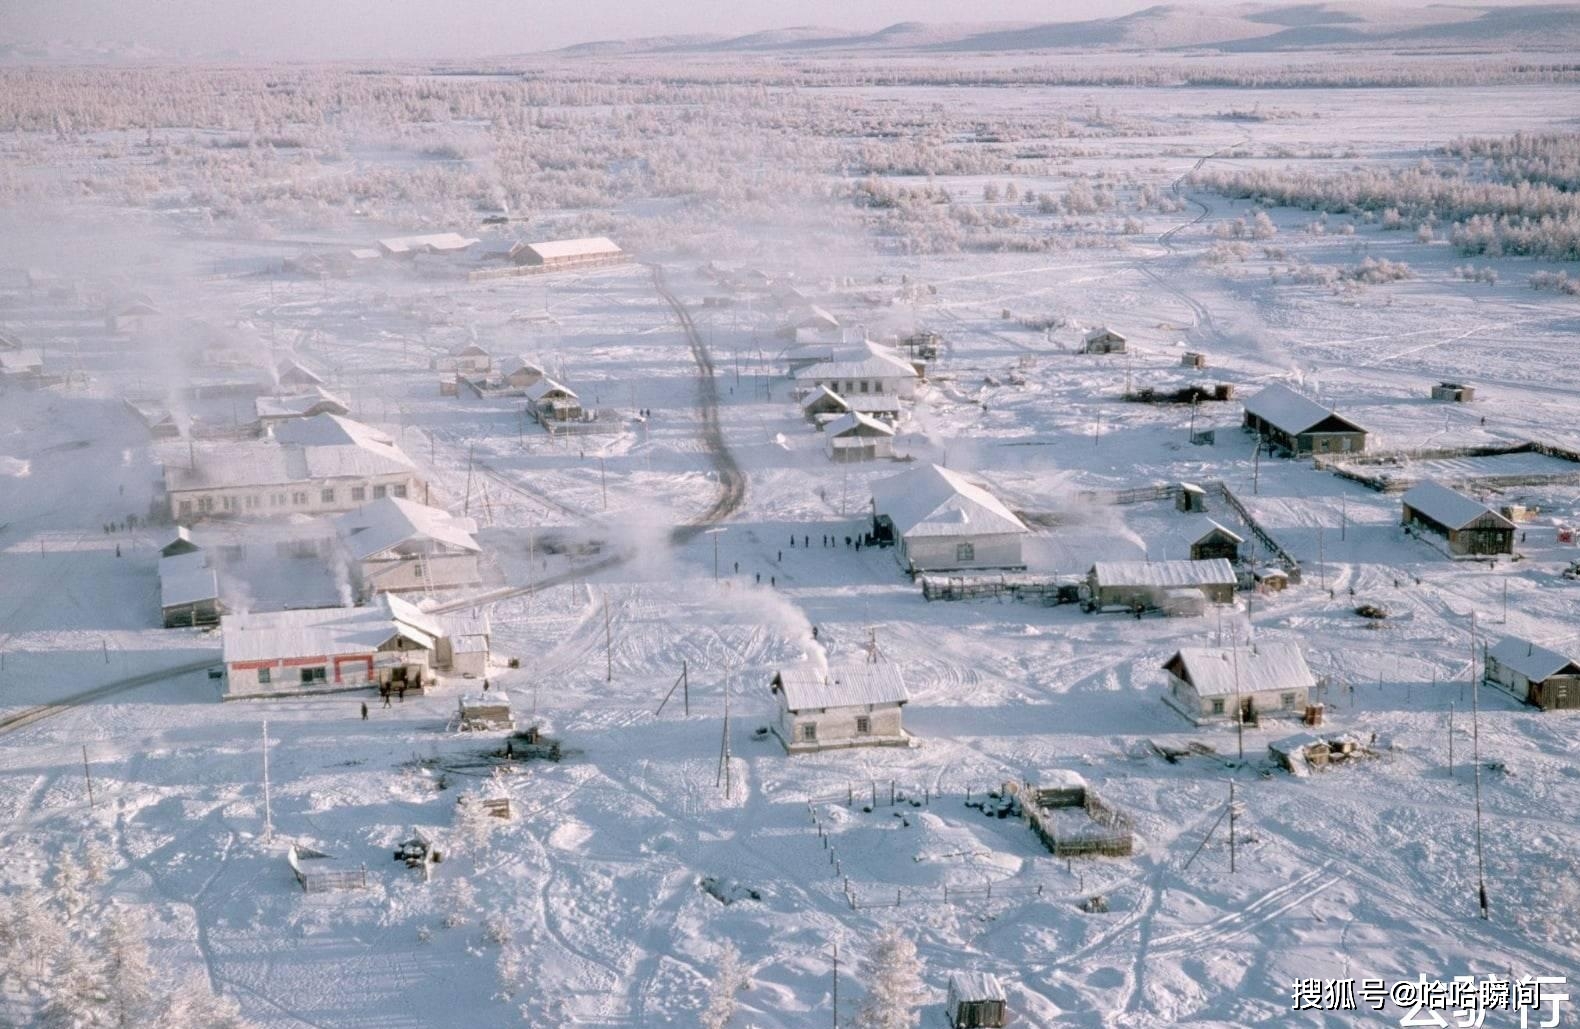 俄罗斯最冷的村子:冬天如厕落地秒变冰雕,生活苦闷村民酗酒消遣